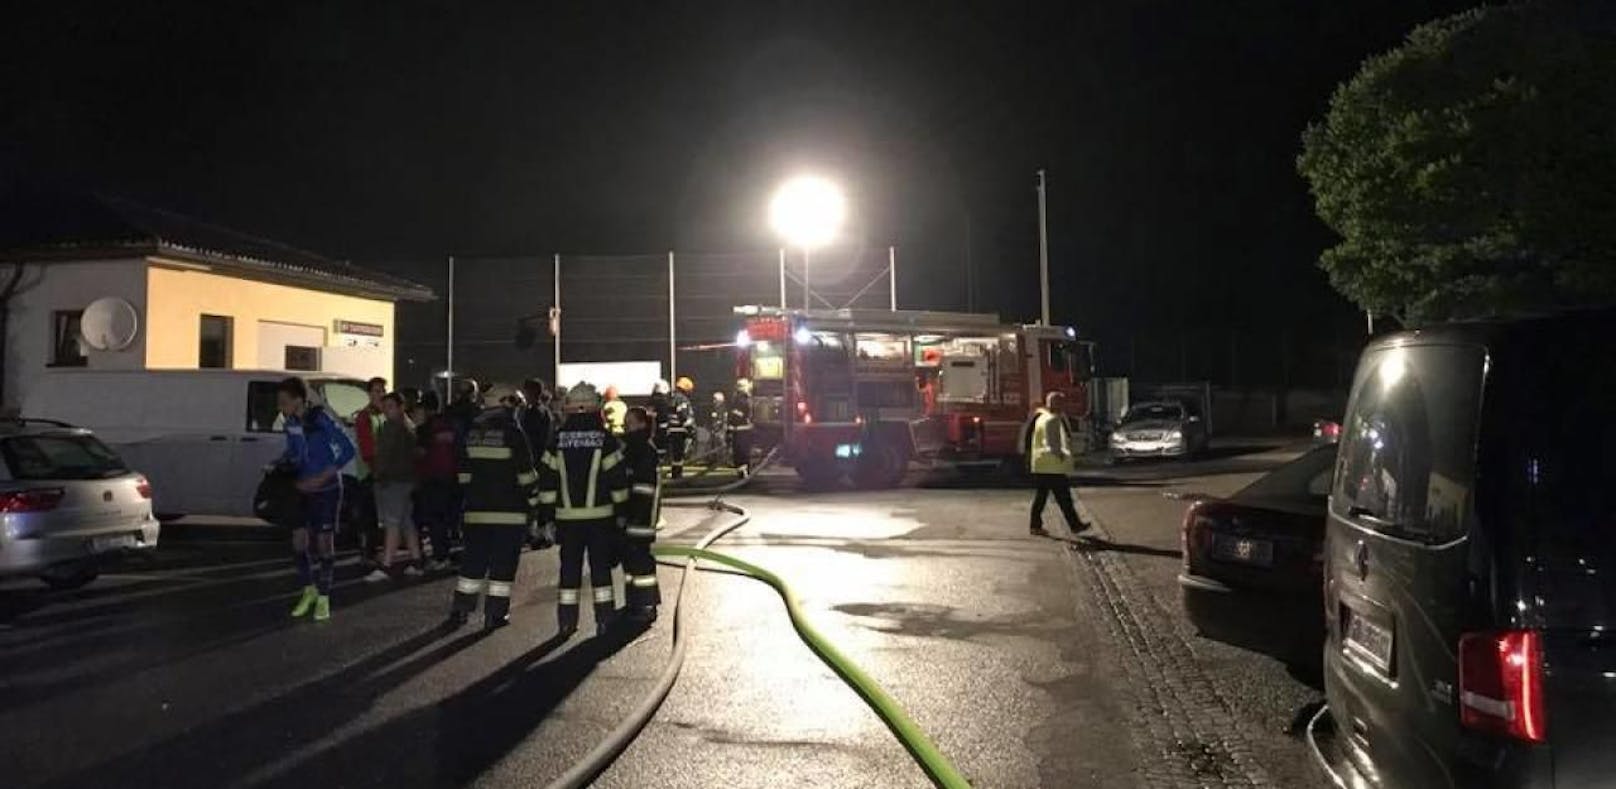 "Heißes" Training: Bei Fußballklub brannte Sauna